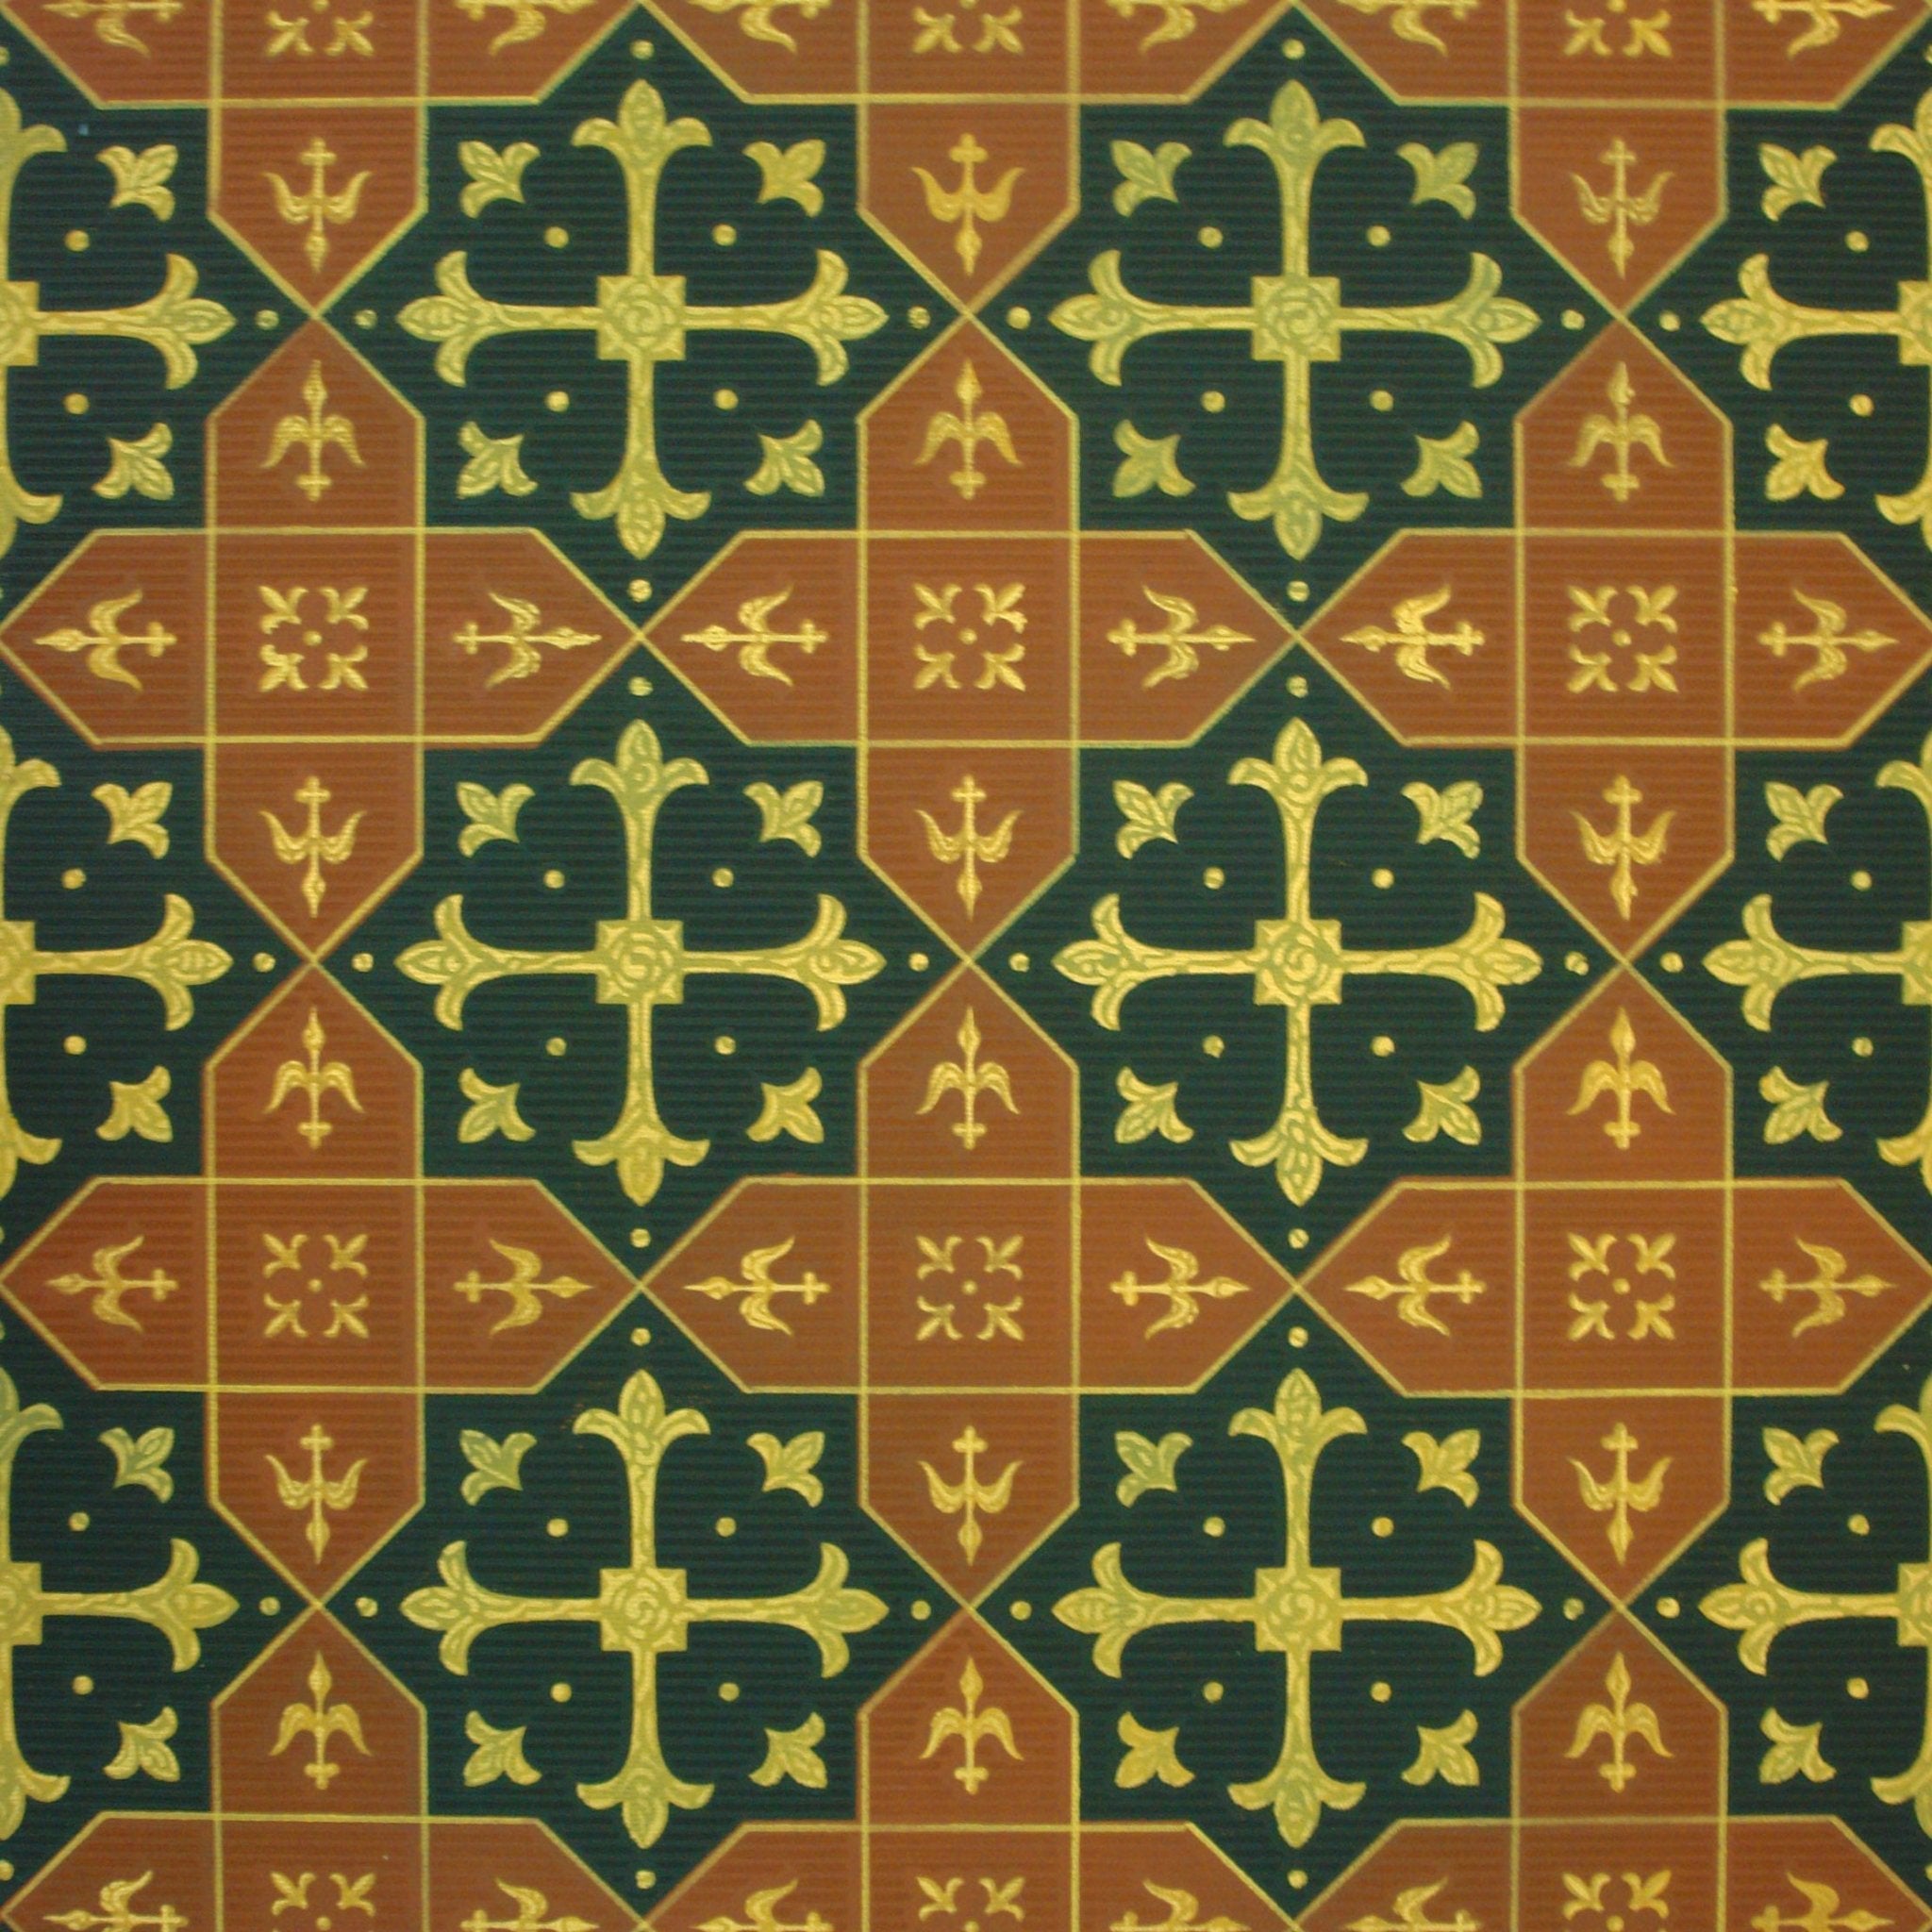 Hay House Floorcloth Series Image.